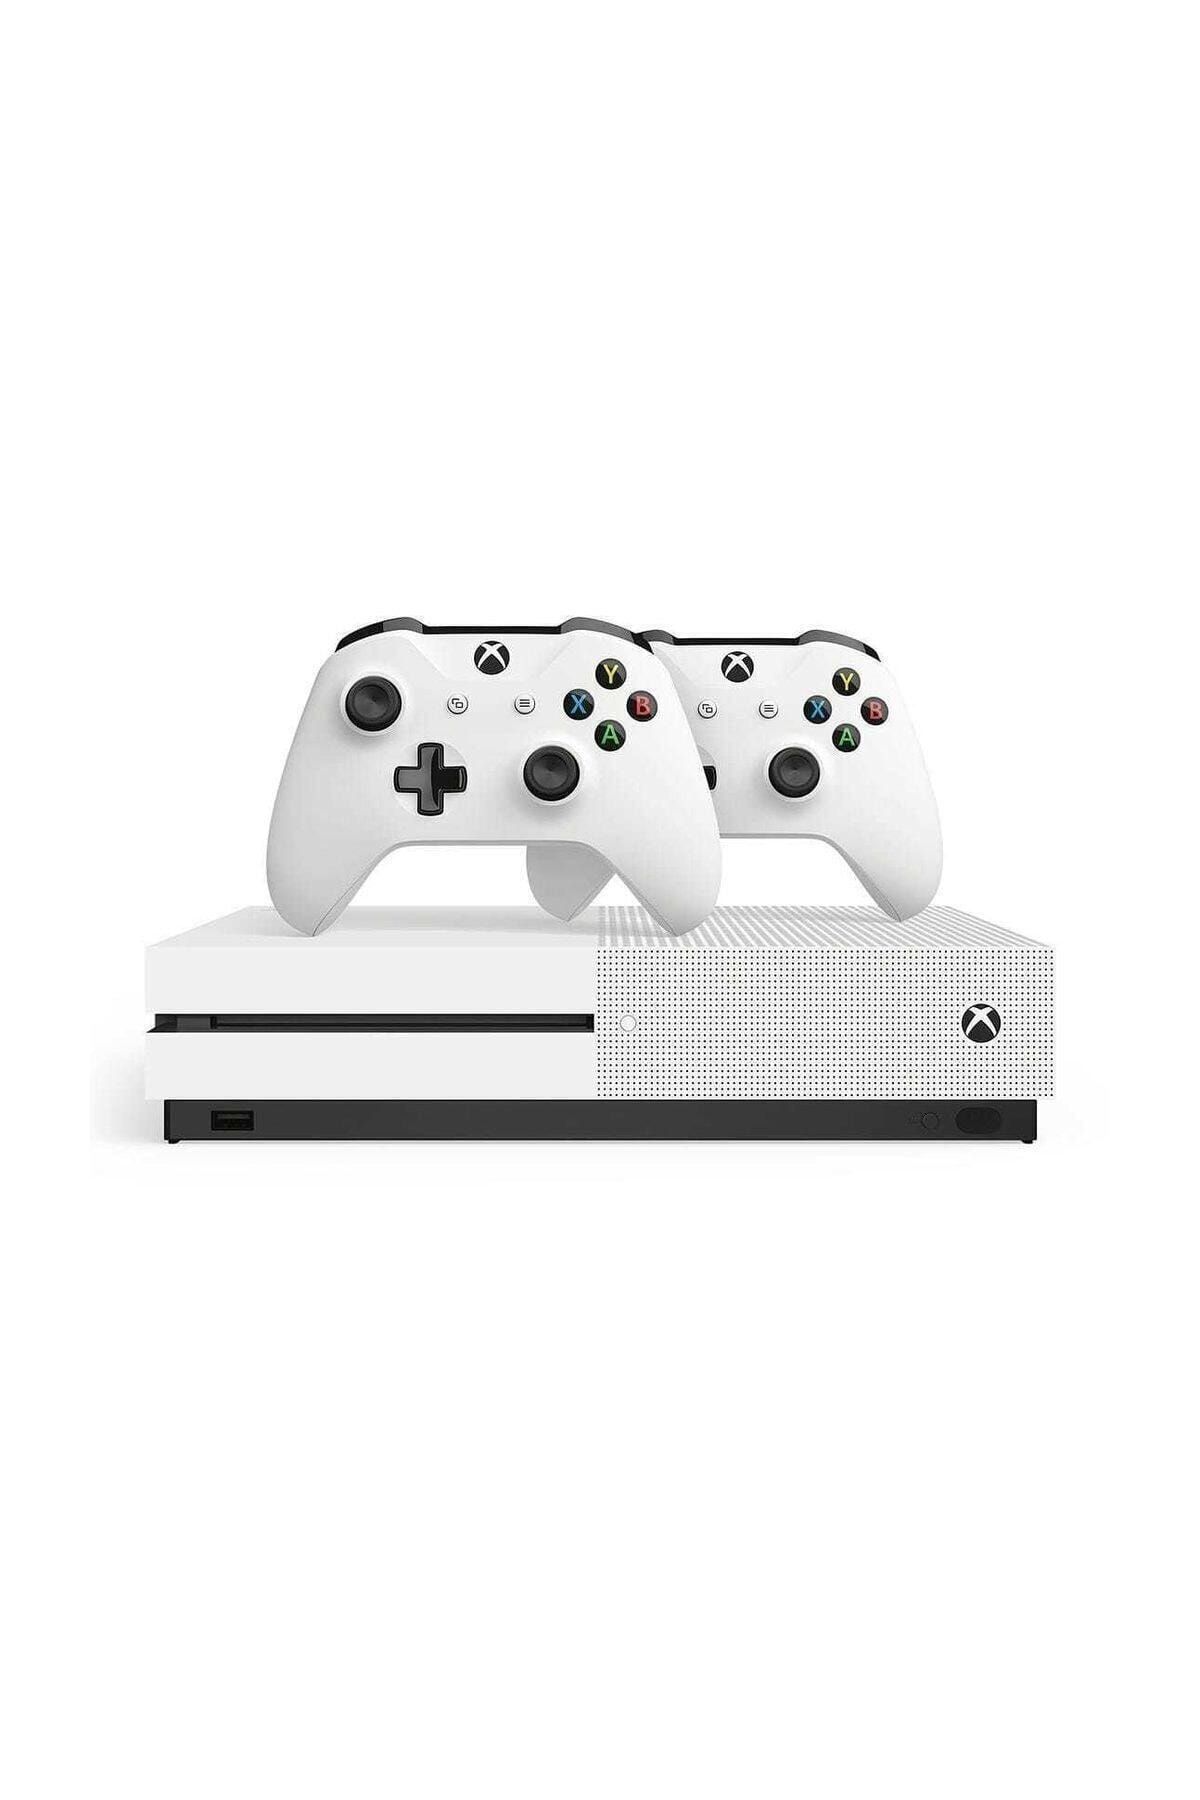 Microsoft Xbox One S - 2 Kol - 1 Tb -teşhir Ürünü-12 Ay Garantili